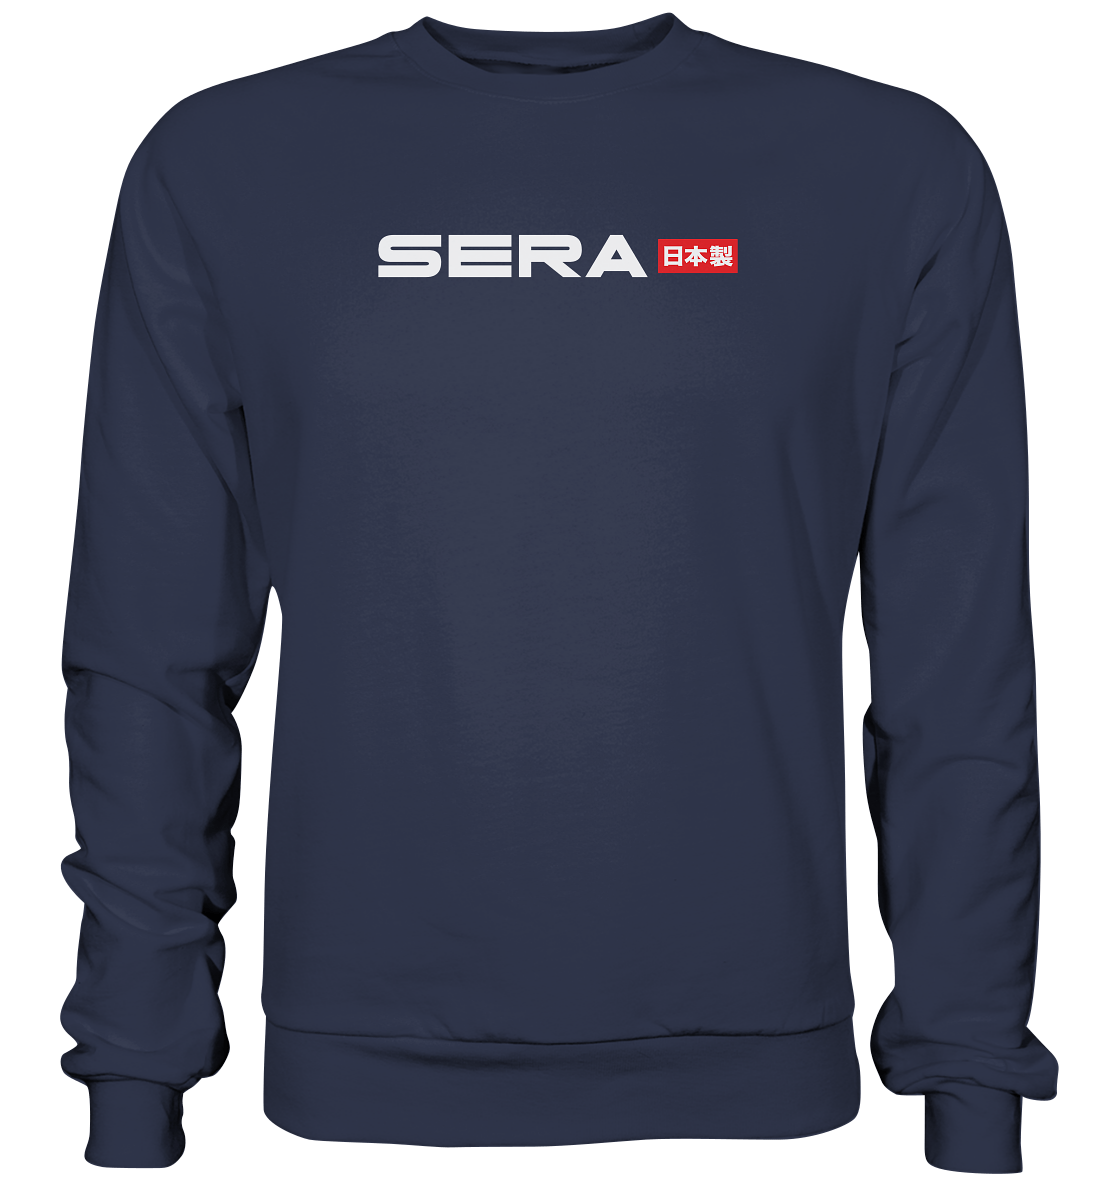 Toyota Sera - Premium Sweatshirt - MotoMerch.de